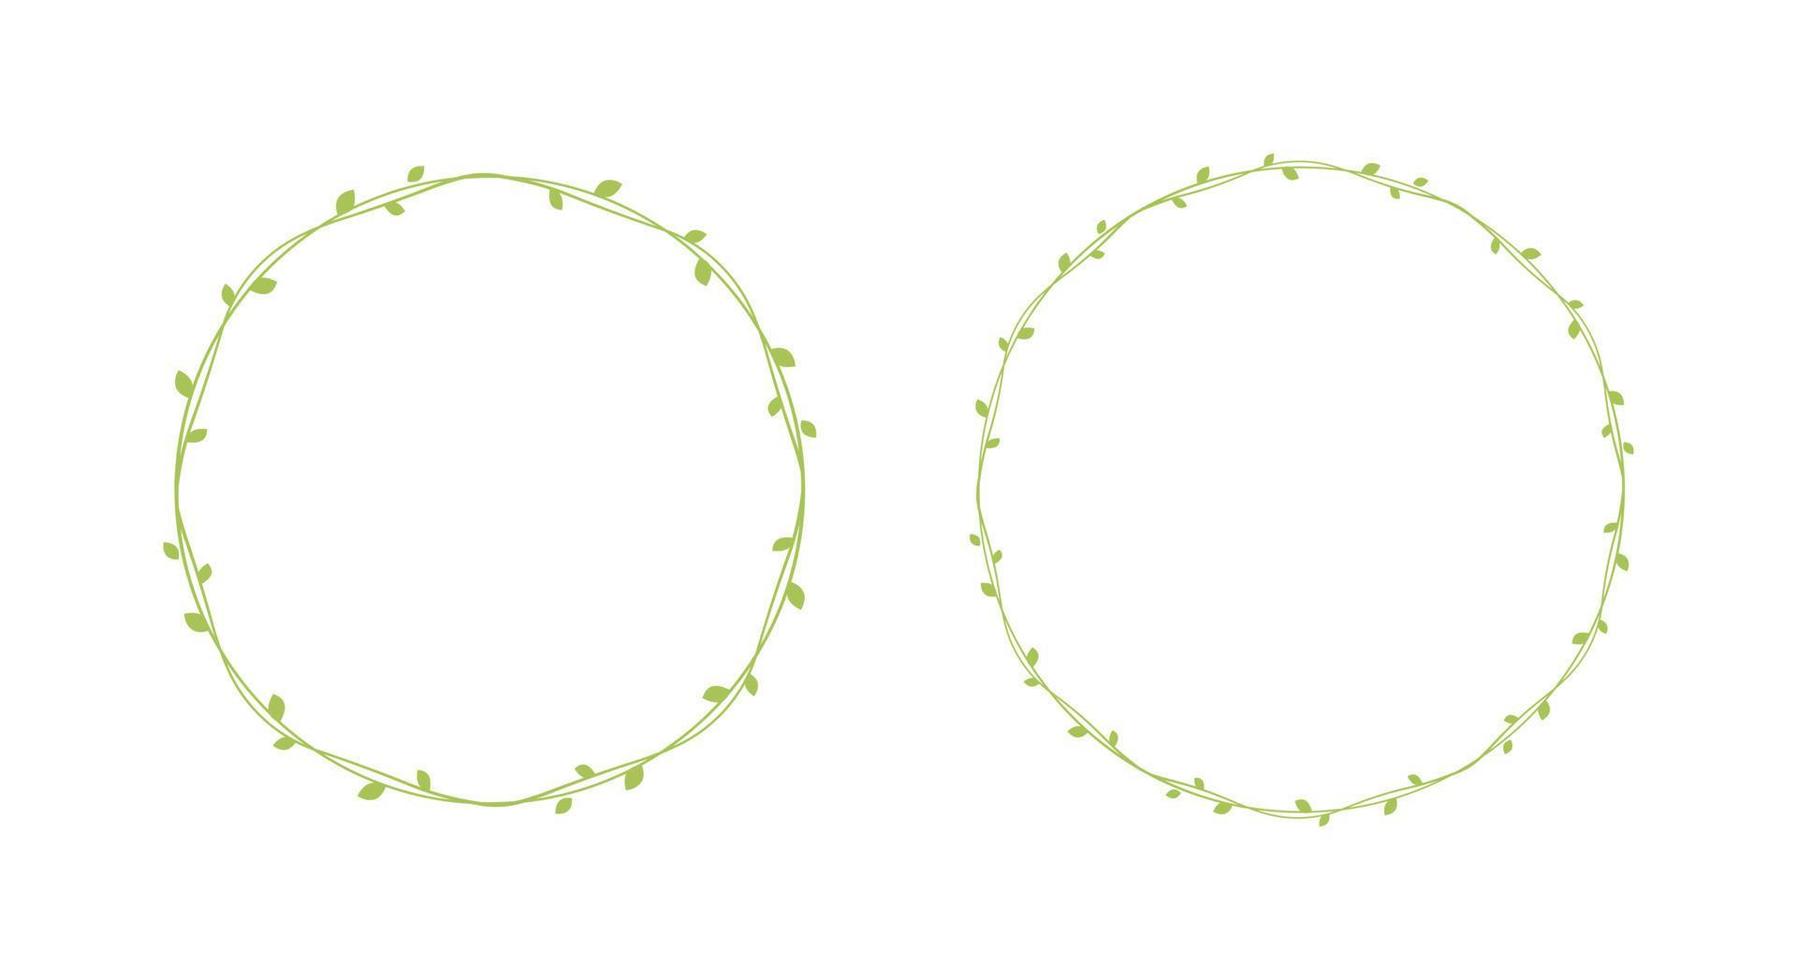 Round green vine frames and borders set, floral botanical design element vector illustration